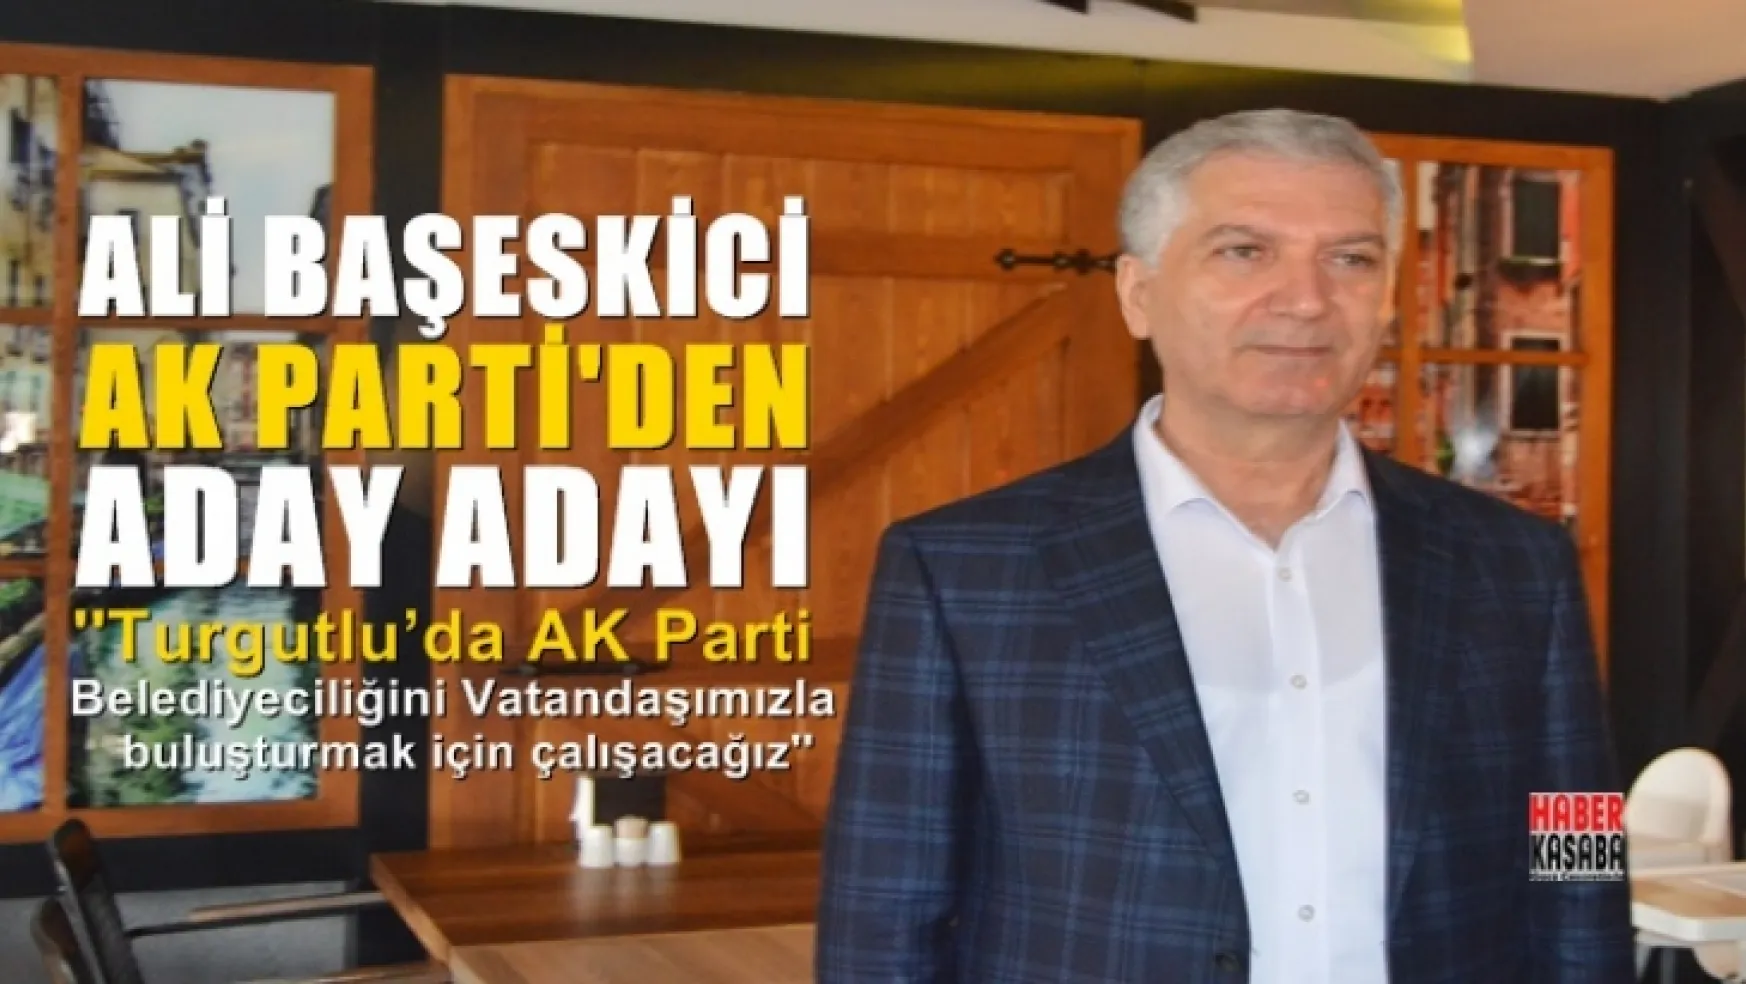 Ali Başeskici AK Parti'nin Aday Adayı